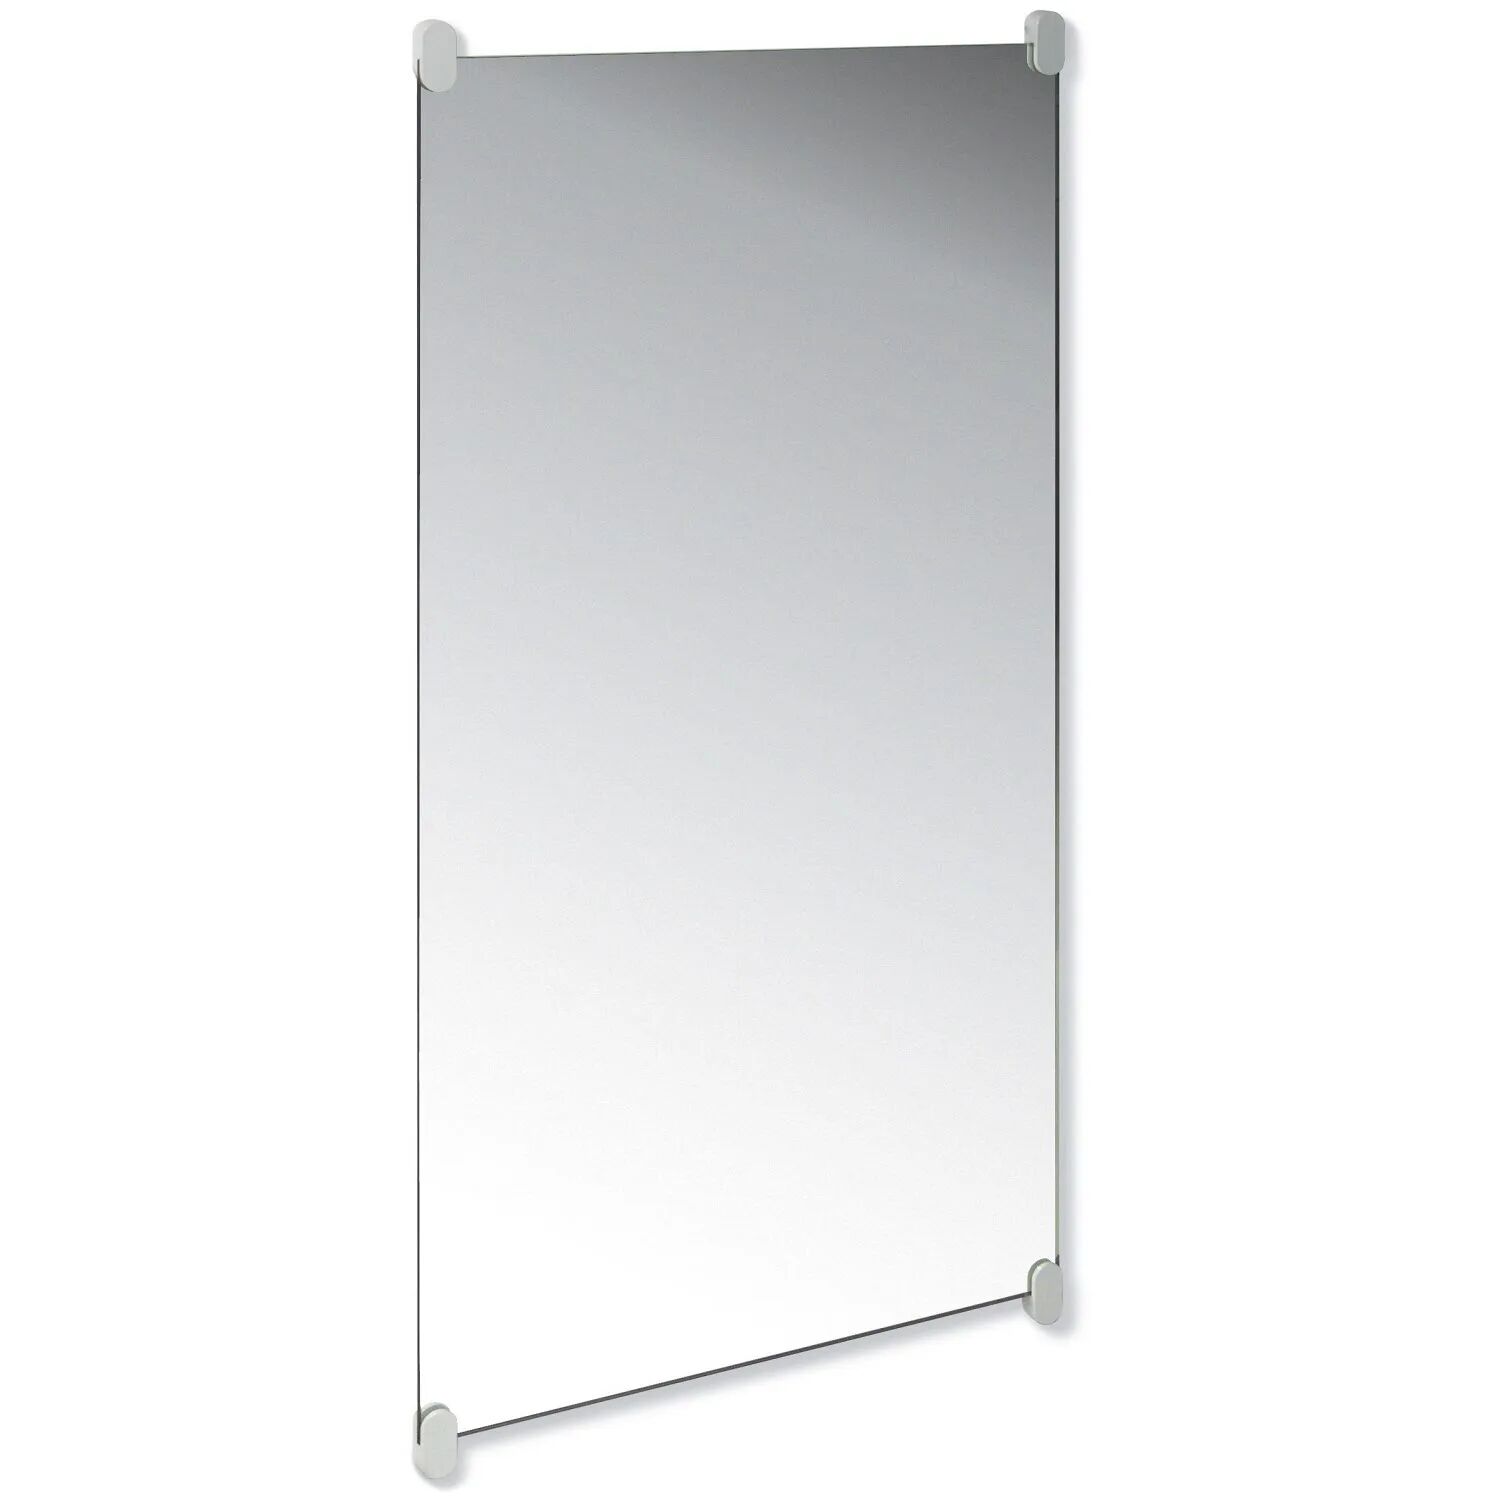 HEWI Spiegel Wandspiegel mit Haltern HEWI Spiegel B: 60 T: 0,6 H: 120, mit Spiegelhaltern 126 cm felsgrau 801.01.300 95